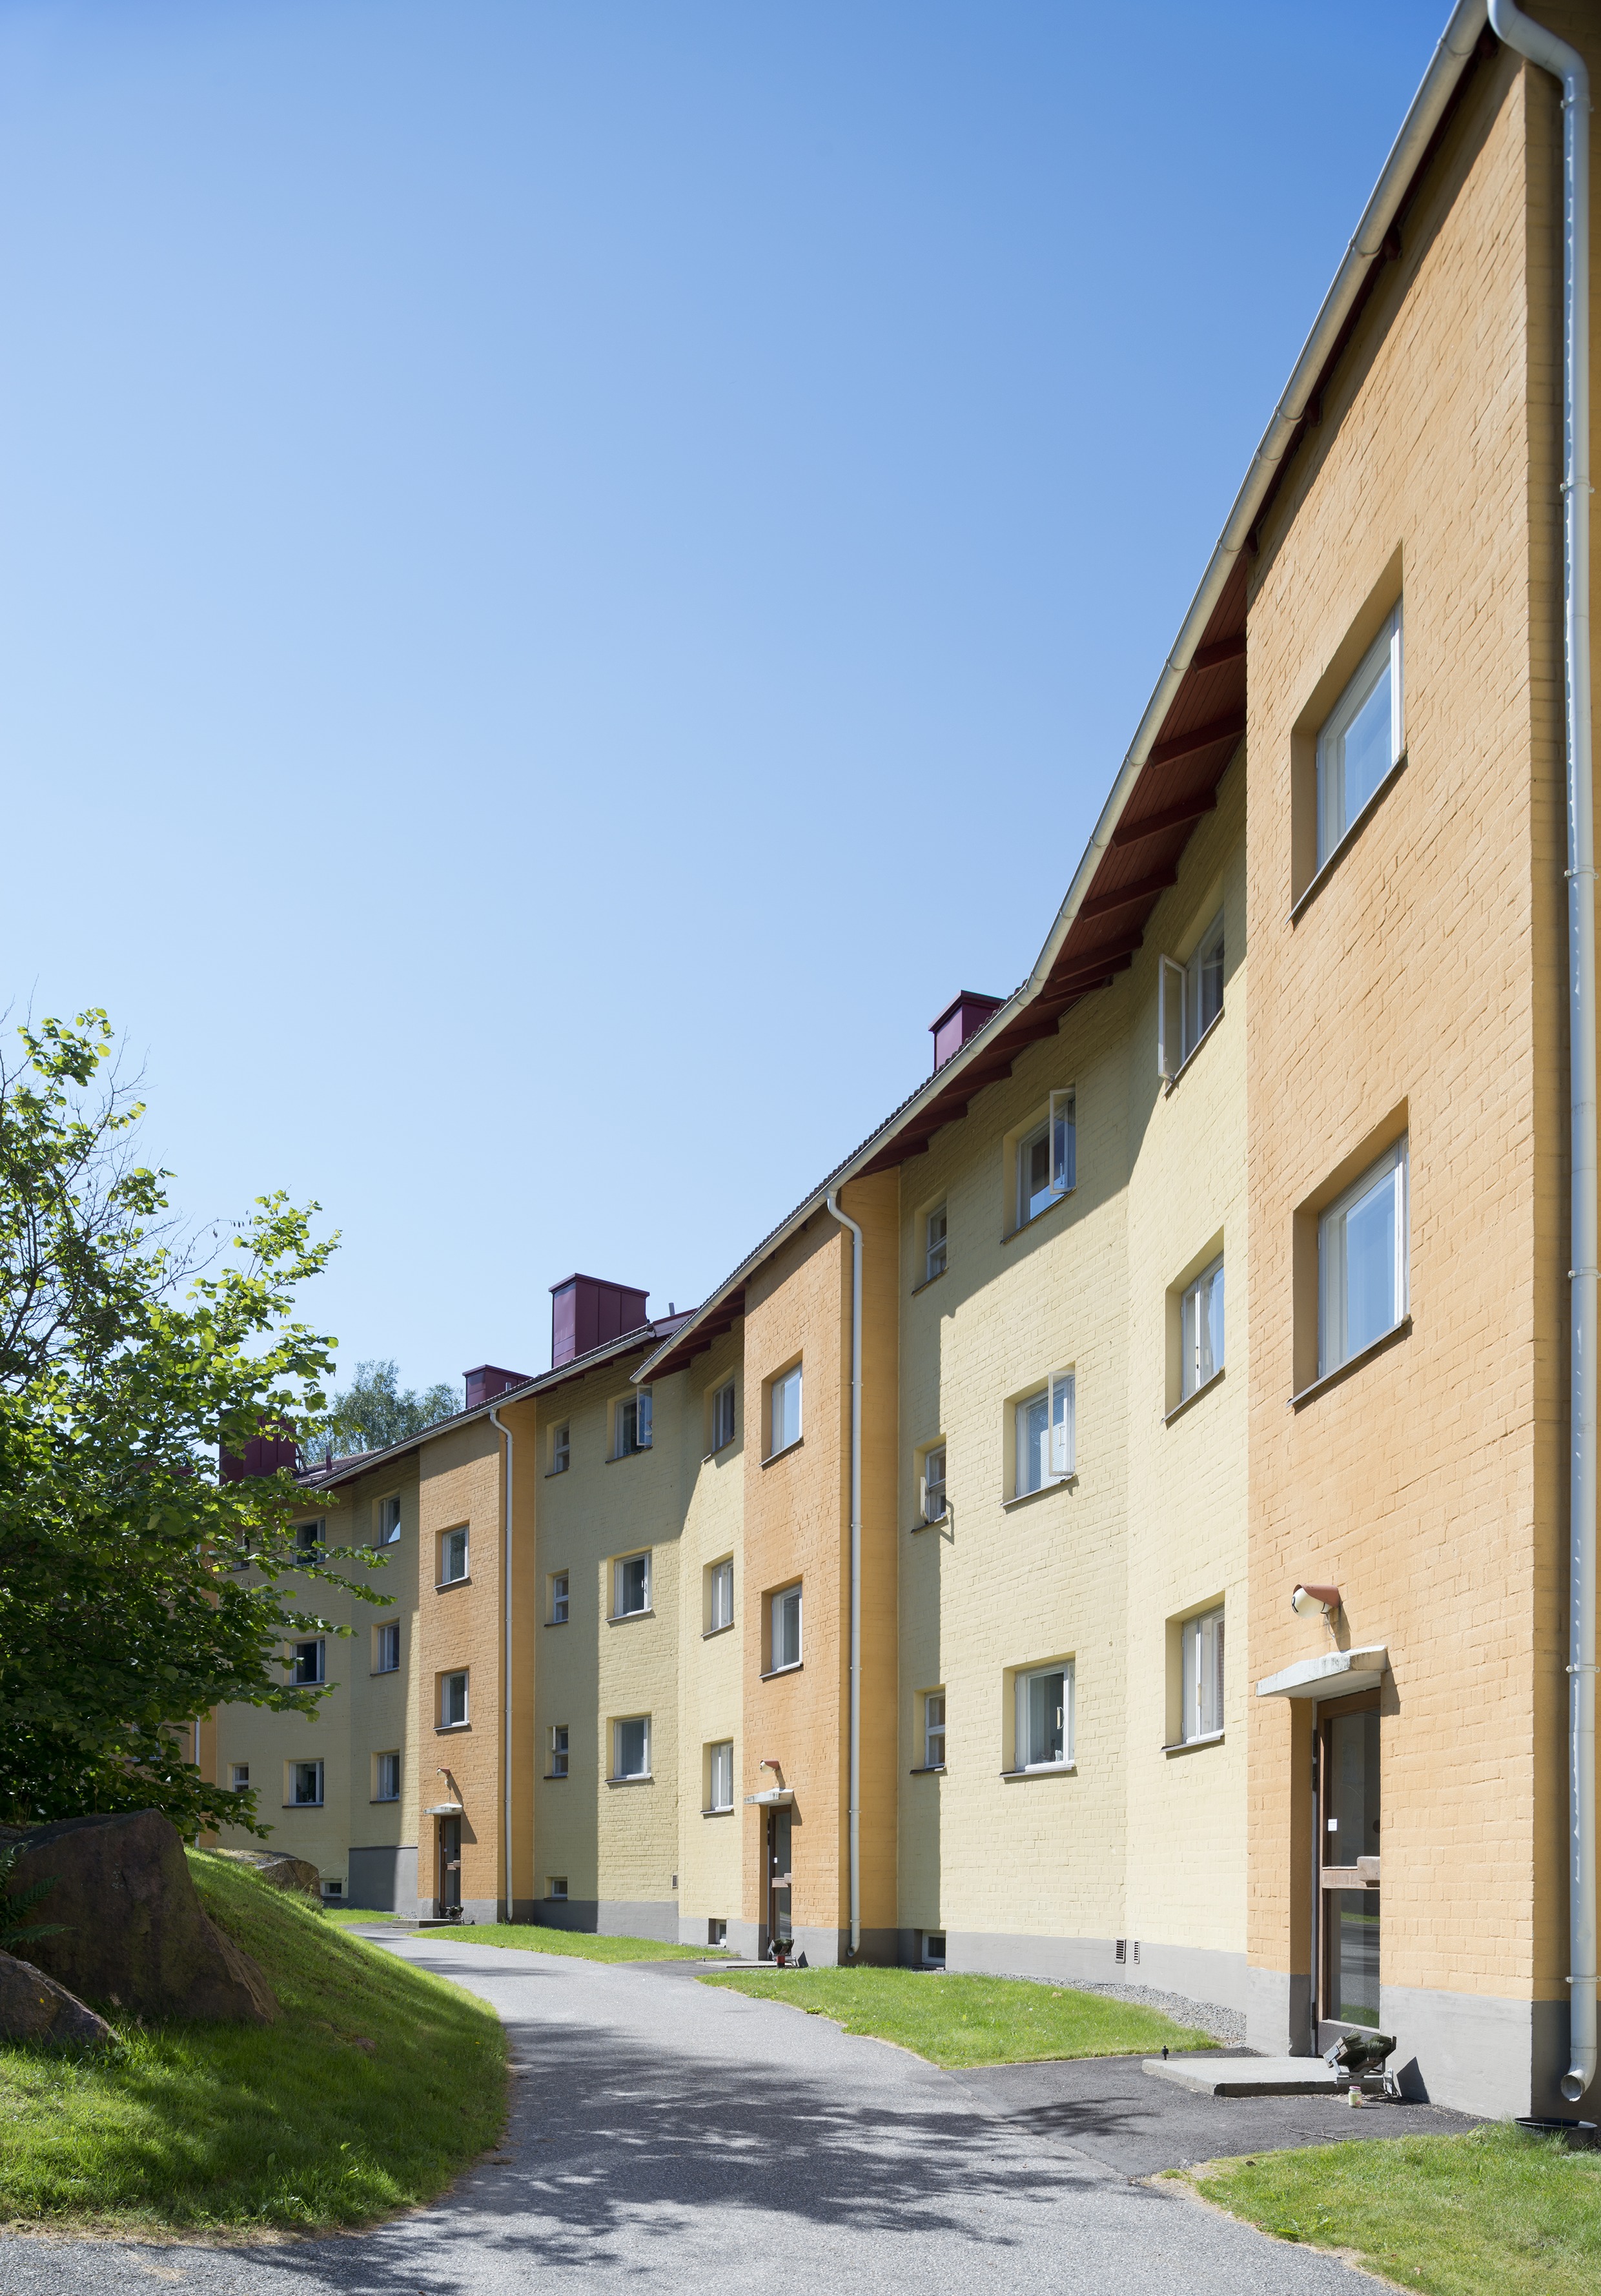 1950-luvun lähiöarkkitehtuuria Maunulassa, Männikkötie 5. Alueen kerrostaloille ominaiset värit ja väriyhdistelmät ovat tärkeä osa rakennusten kulttuurihistoriallista arvoa.